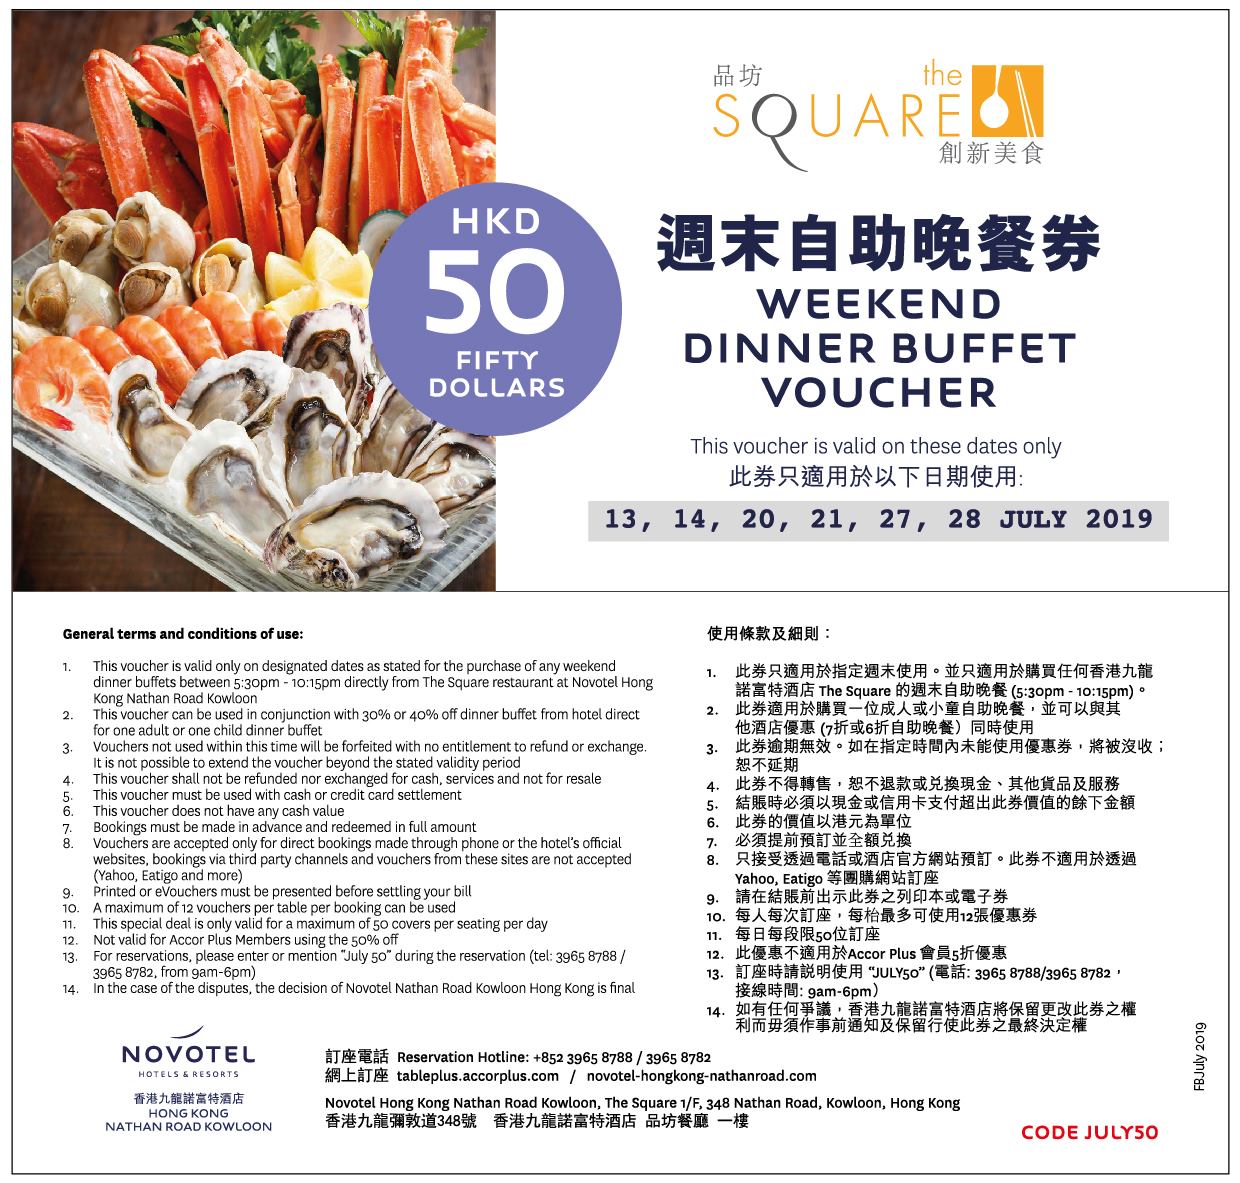 香港九龍諾富特酒店7月周末6折自助晚餐+減免元優惠(至19年7月28日)圖片1